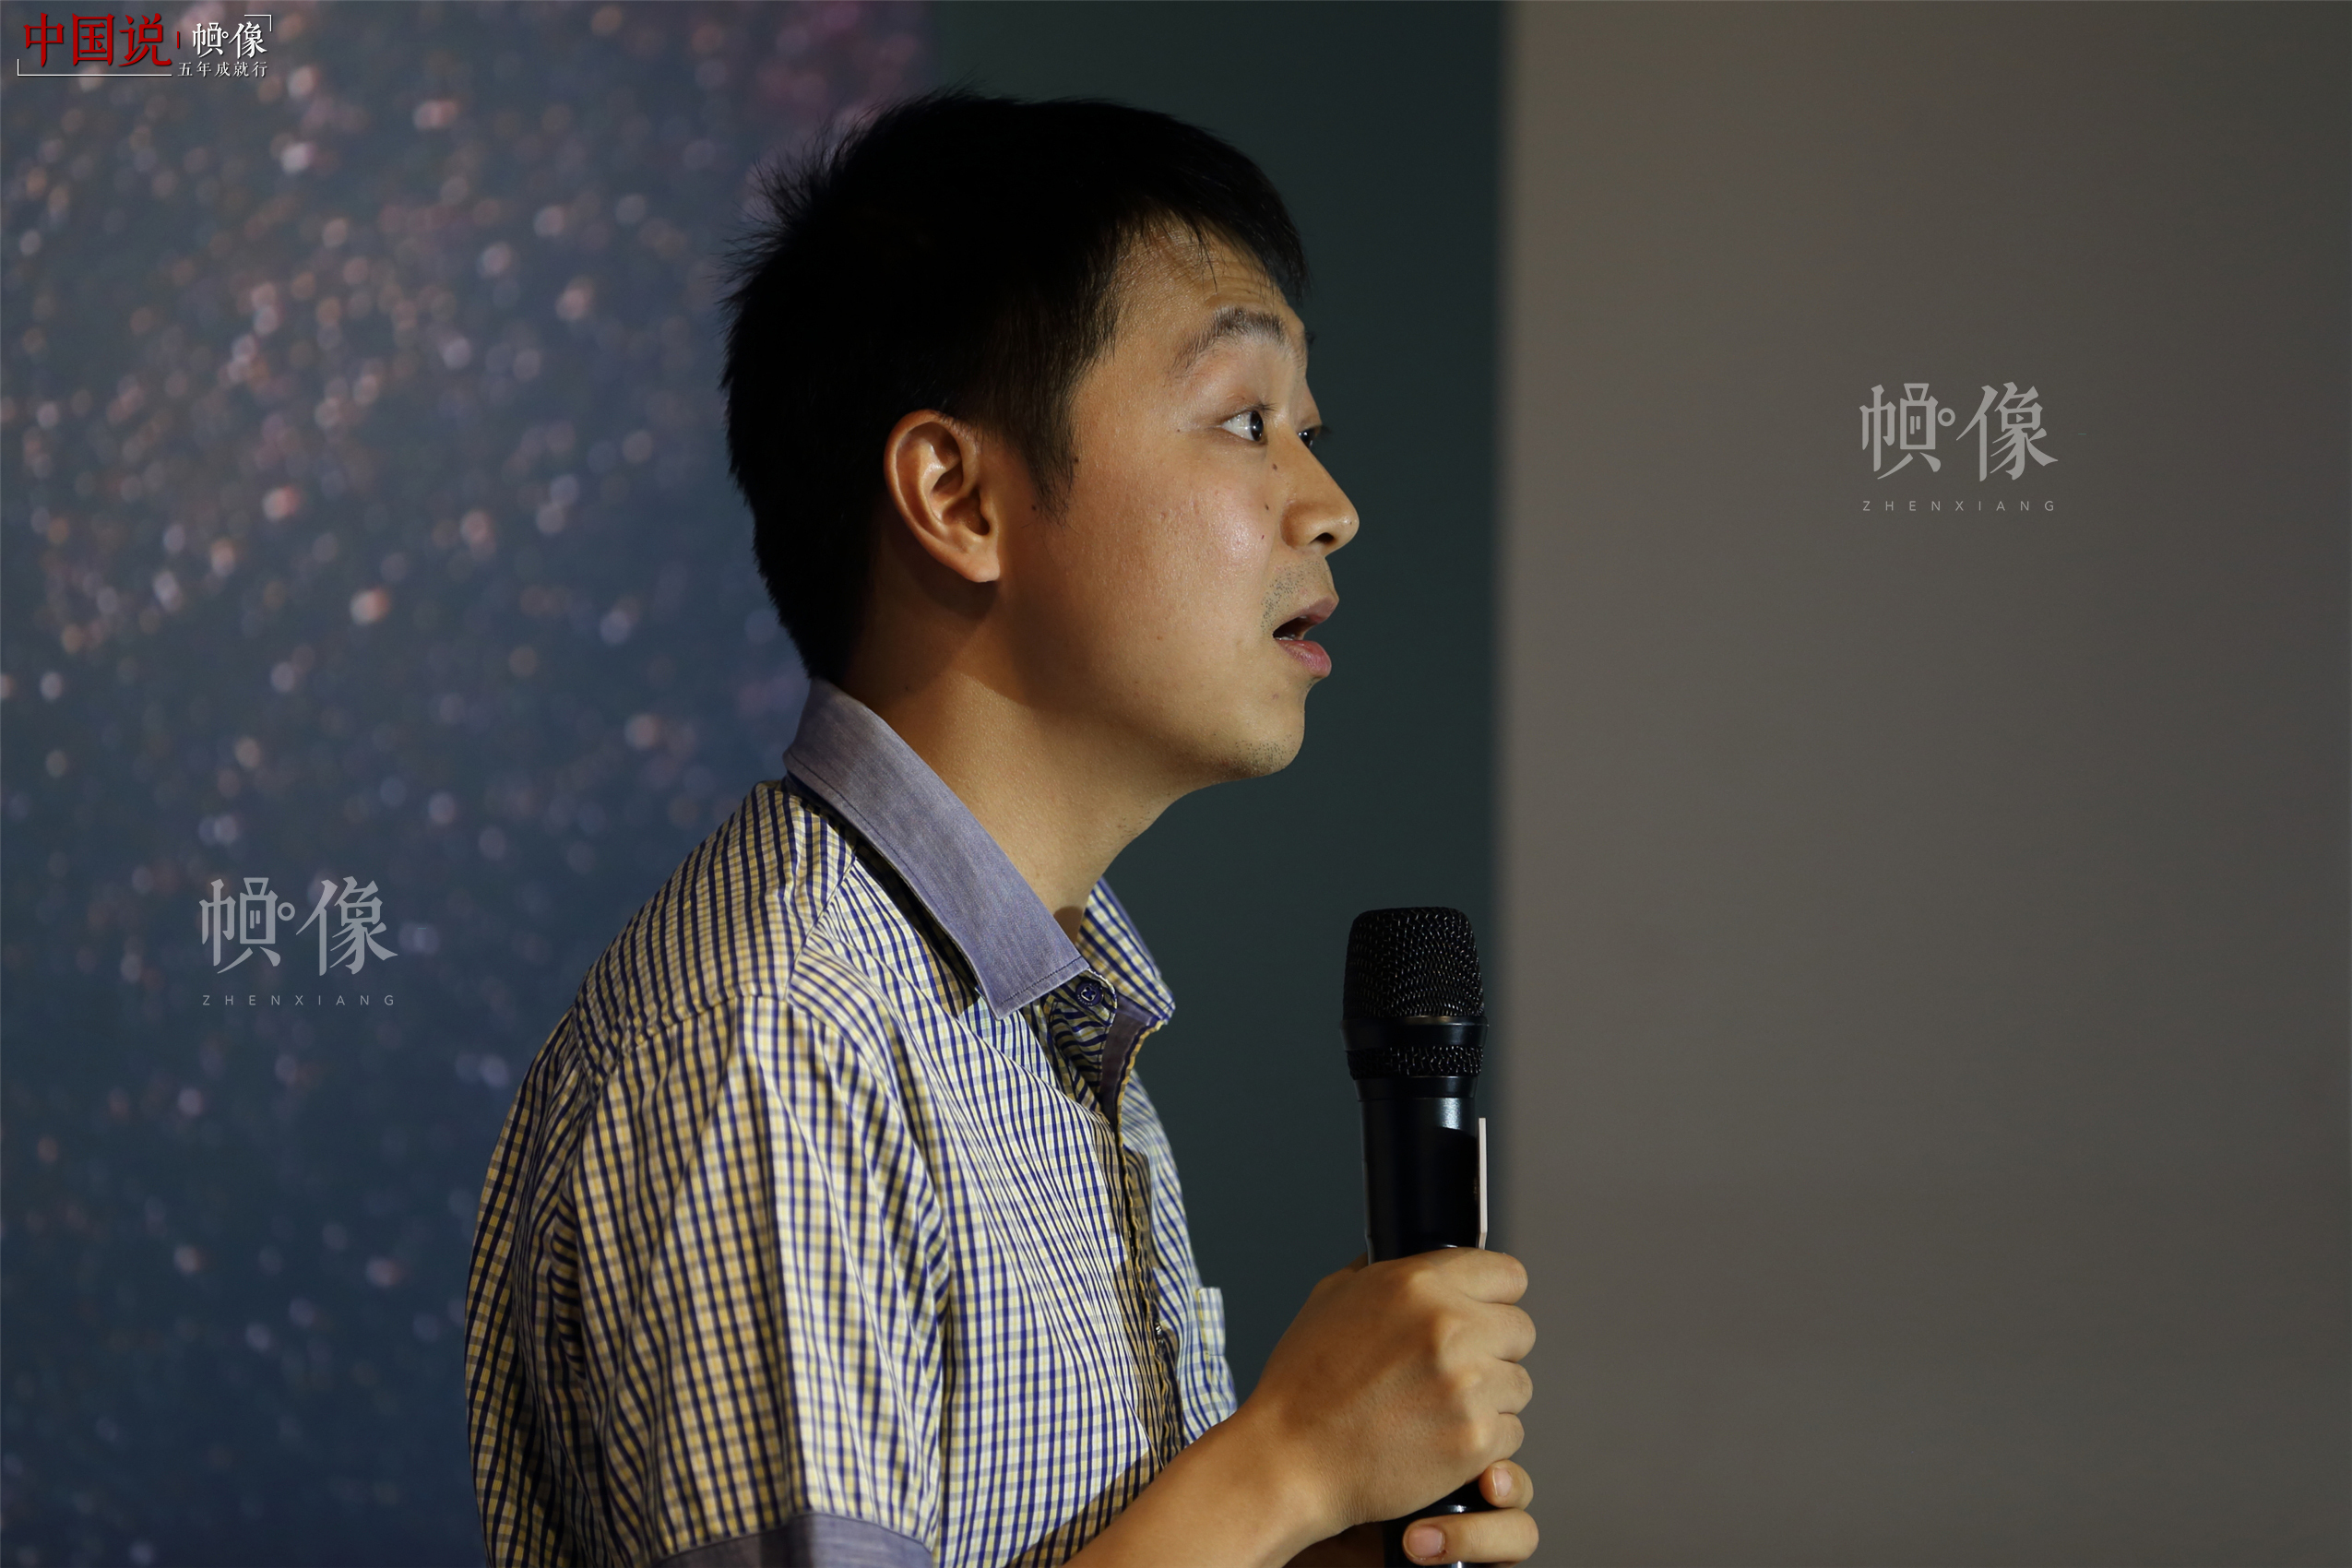 有人公益基金会残障项目总监、《奇葩说》辩手蔡聪分享经历。中国网记者 陈维松 摄